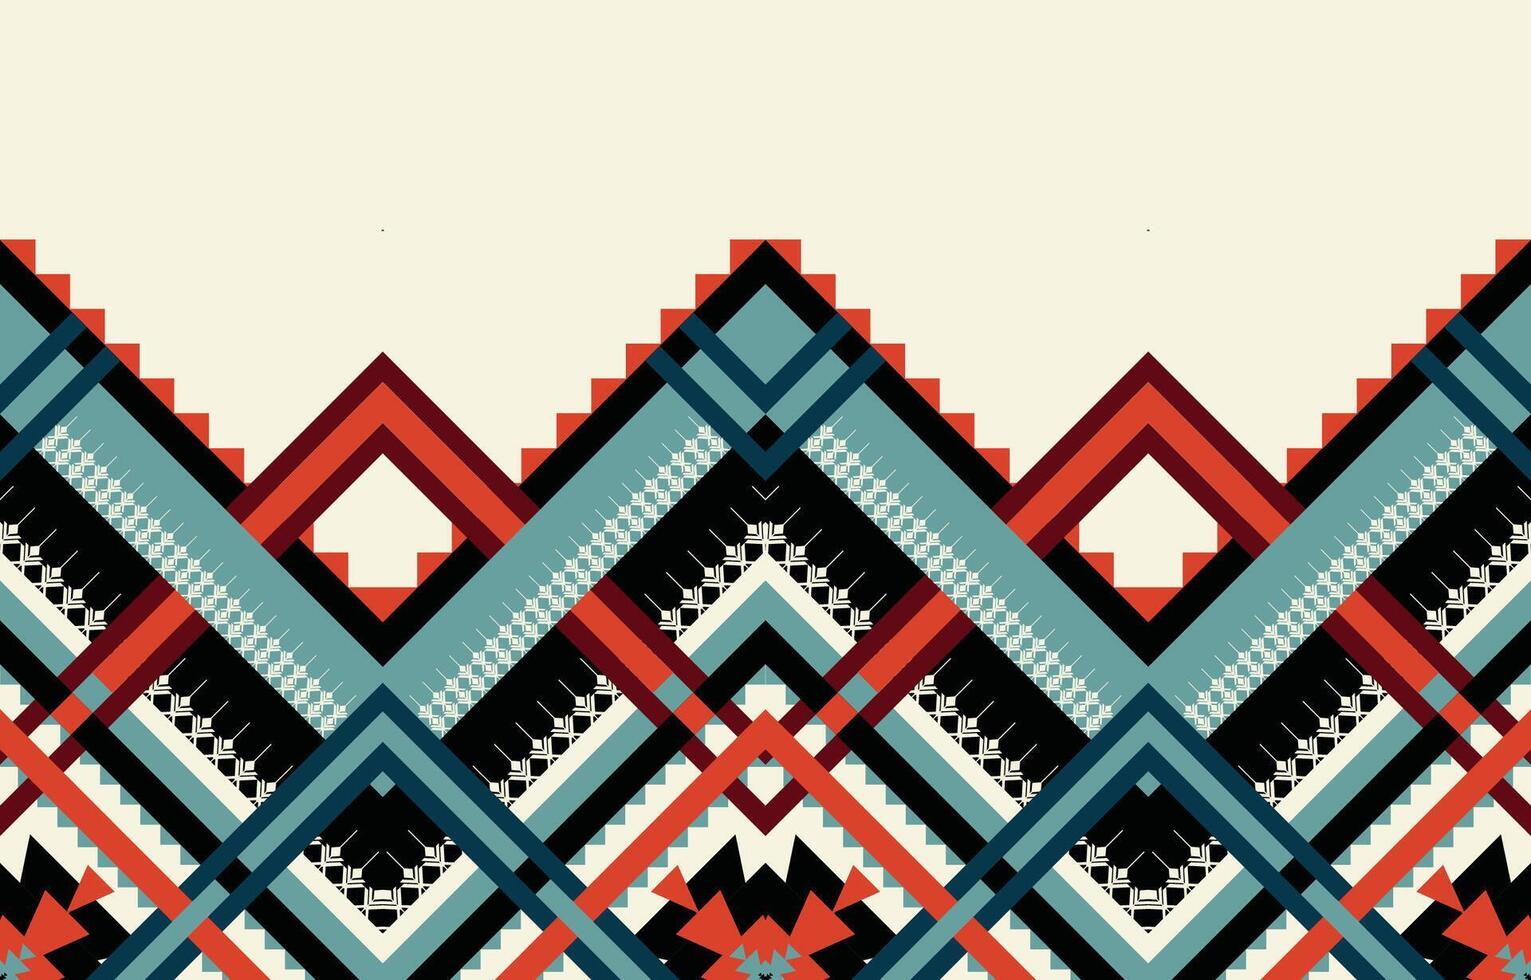 vector de patrón étnico geométrico. motivos africanos, americanos, mexicanos, aztecas occidentales a rayas y patrones bohemios. diseñado para fondo, papel tapiz, impresión, alfombra, envoltura, azulejo, ilustración batik.vector.